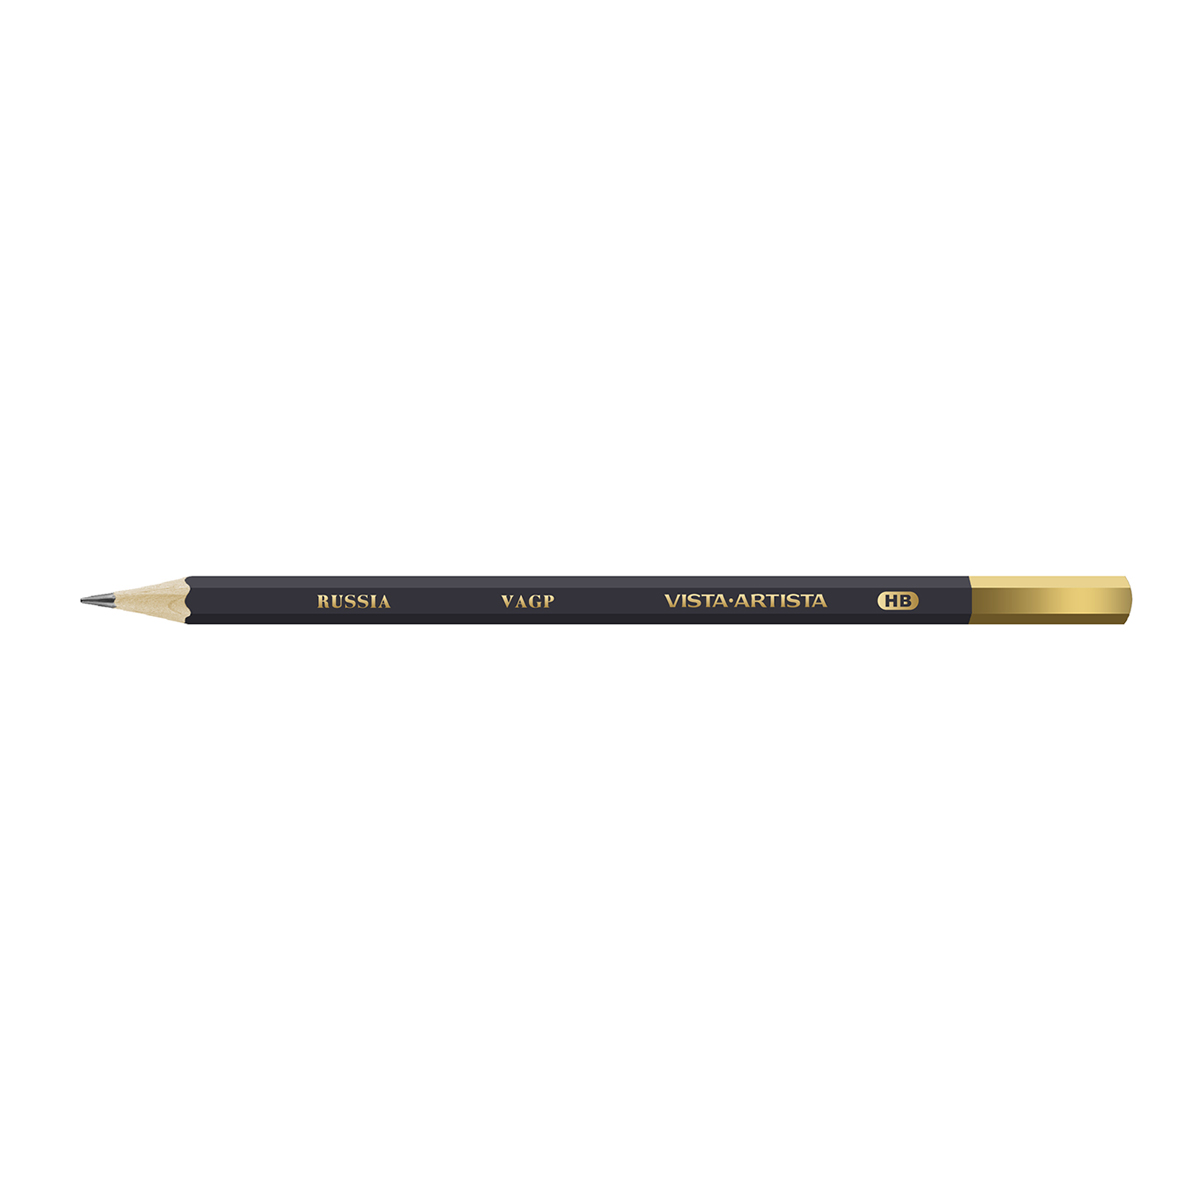 VISTA-ARTISTA VAGP Чернографитный карандаш заточенный ТМ (HB) . Фото 1.